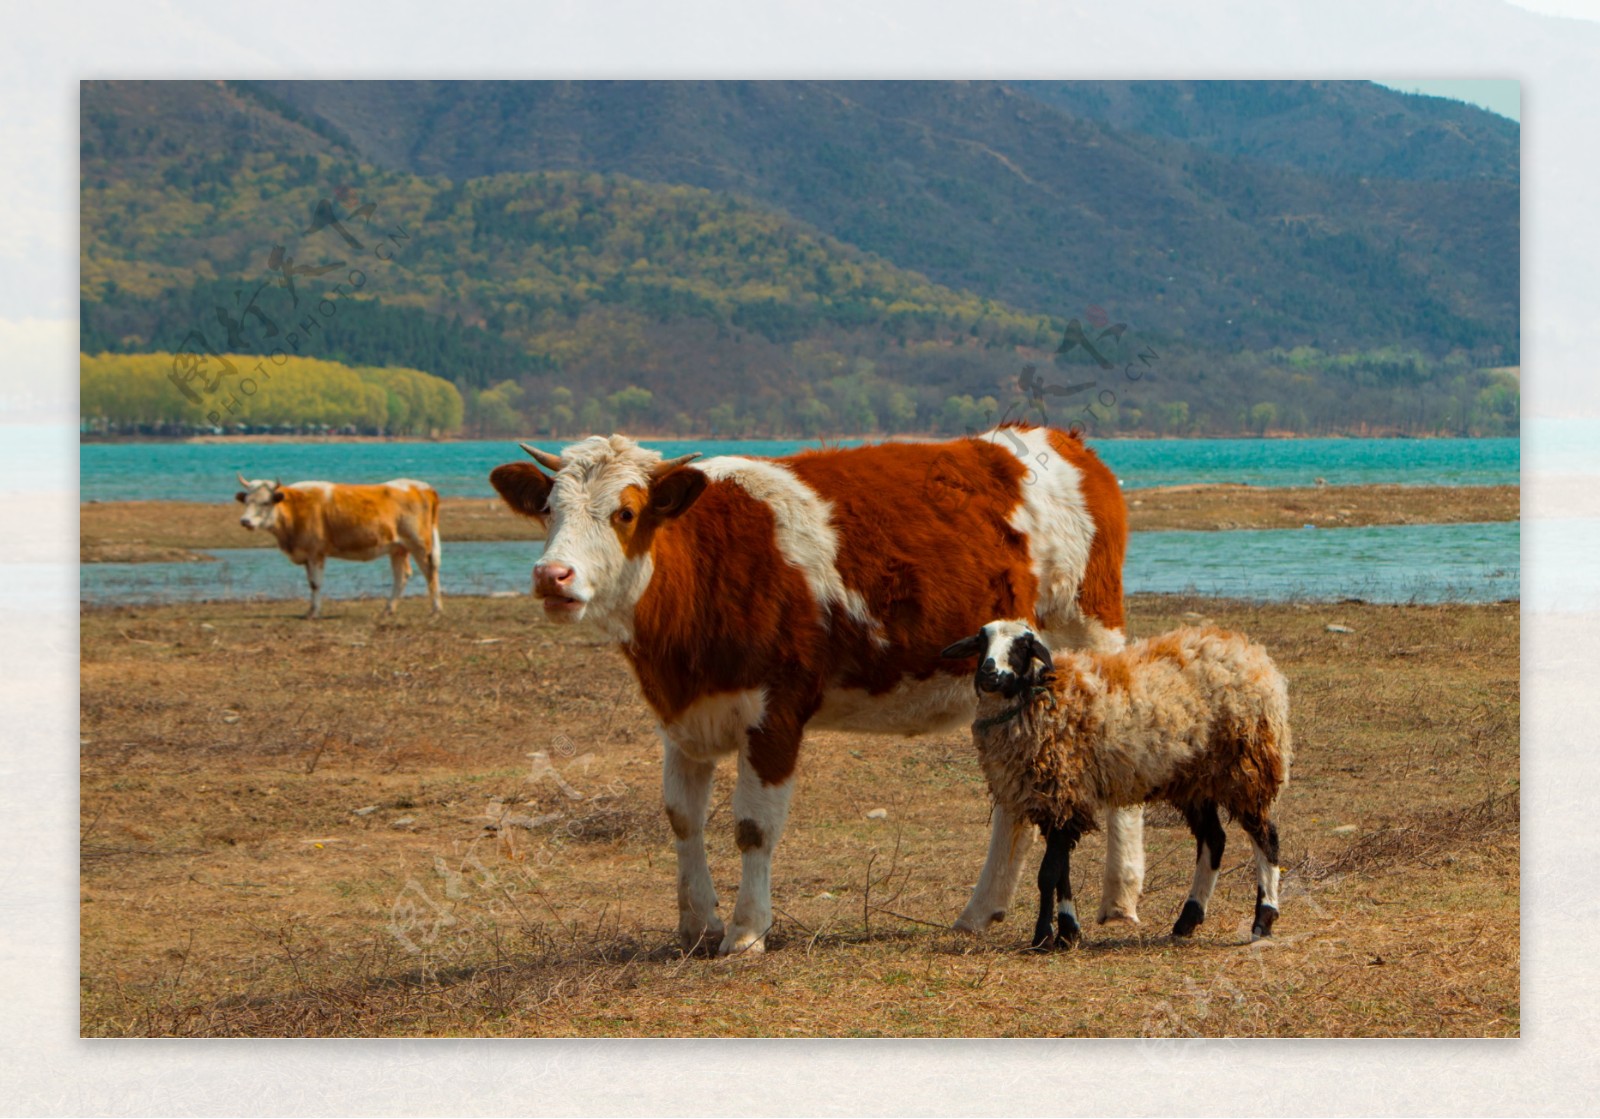 牛牛和羊自然和谐的漫步